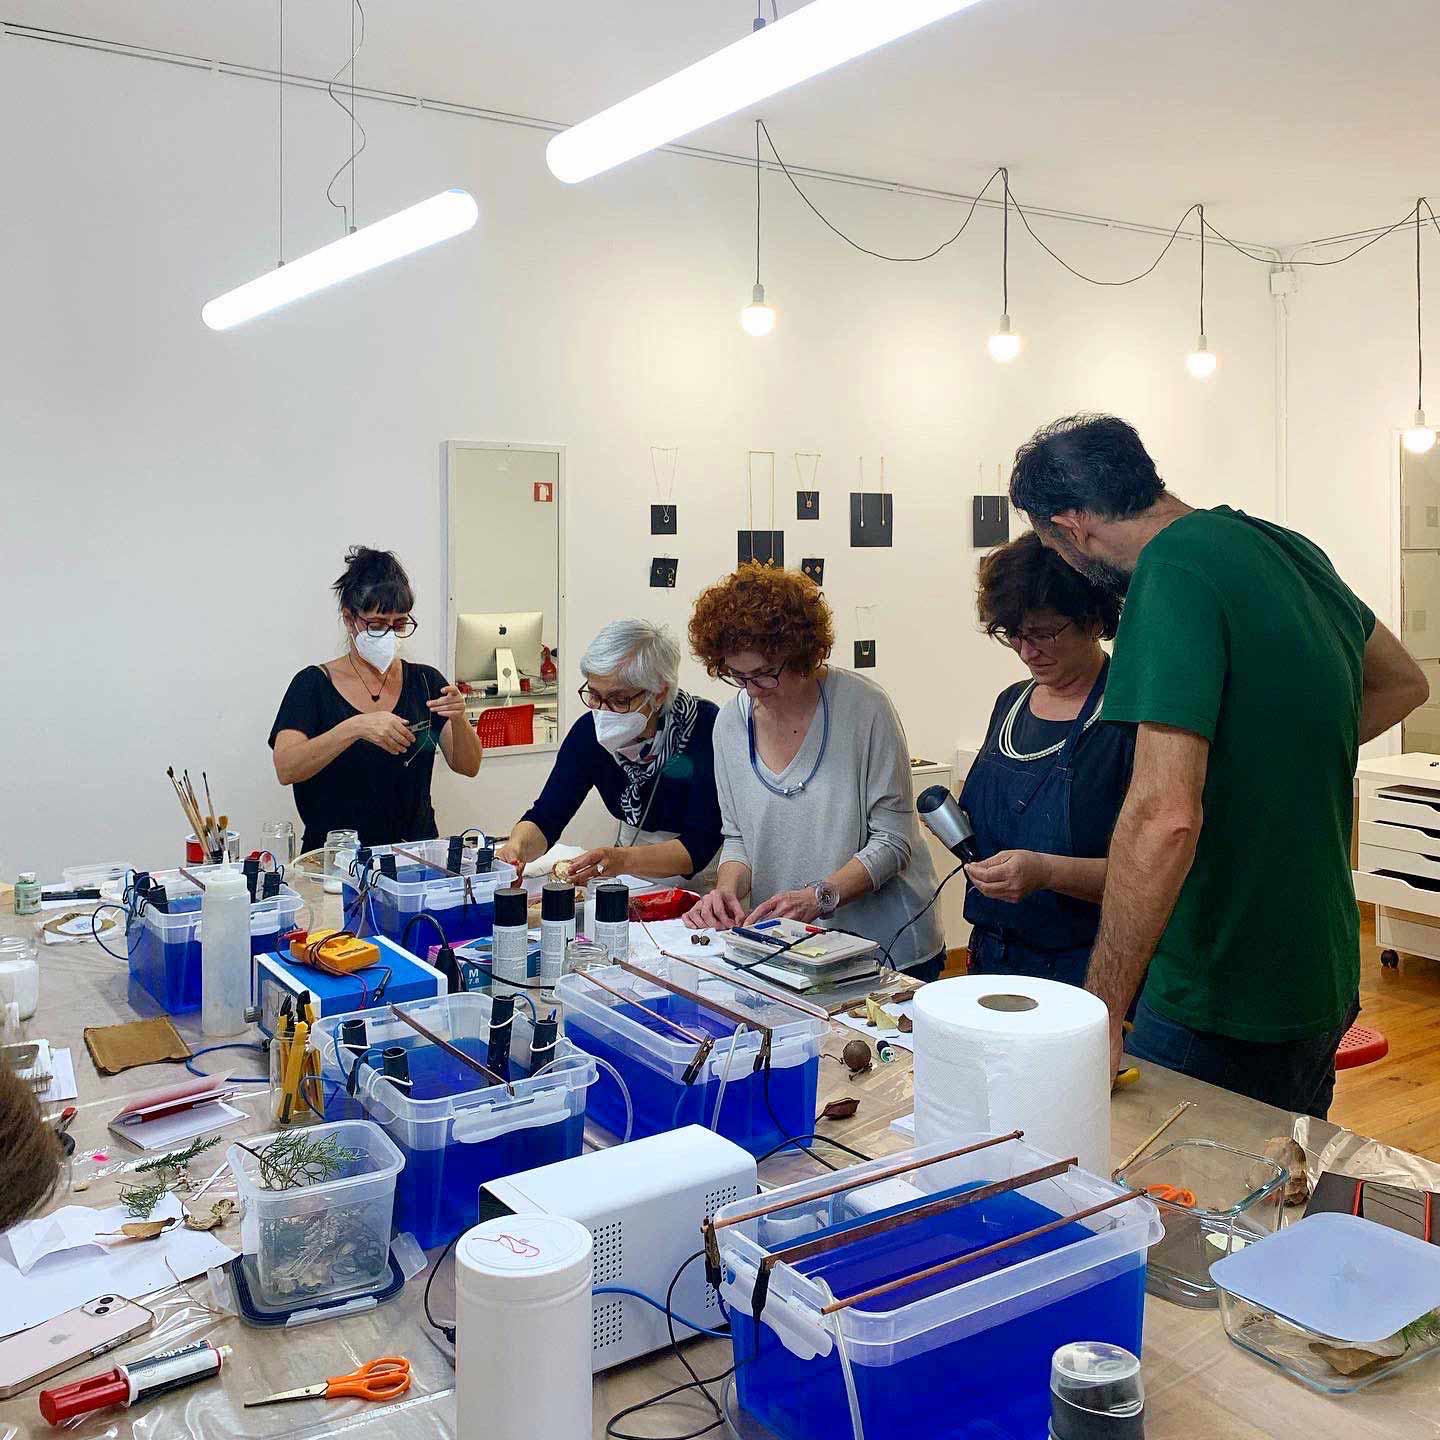 Ana-Pina-Tincal-lab-workshop-Gaston-Rois-entrevista-LaJoyeria-de-Autor